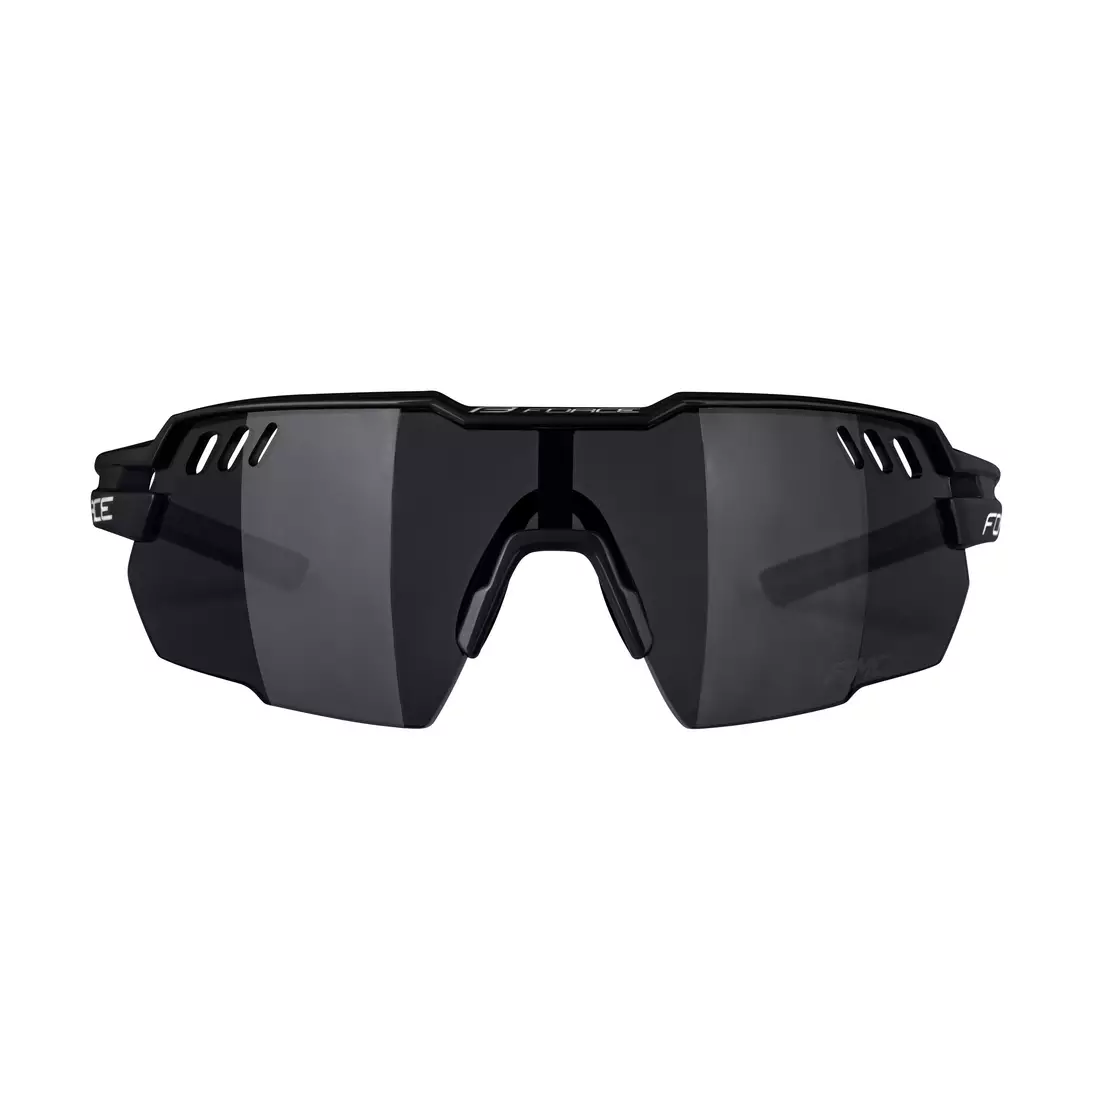 FORCE sportbrille AMOLEDO, schwarz und grau 910881